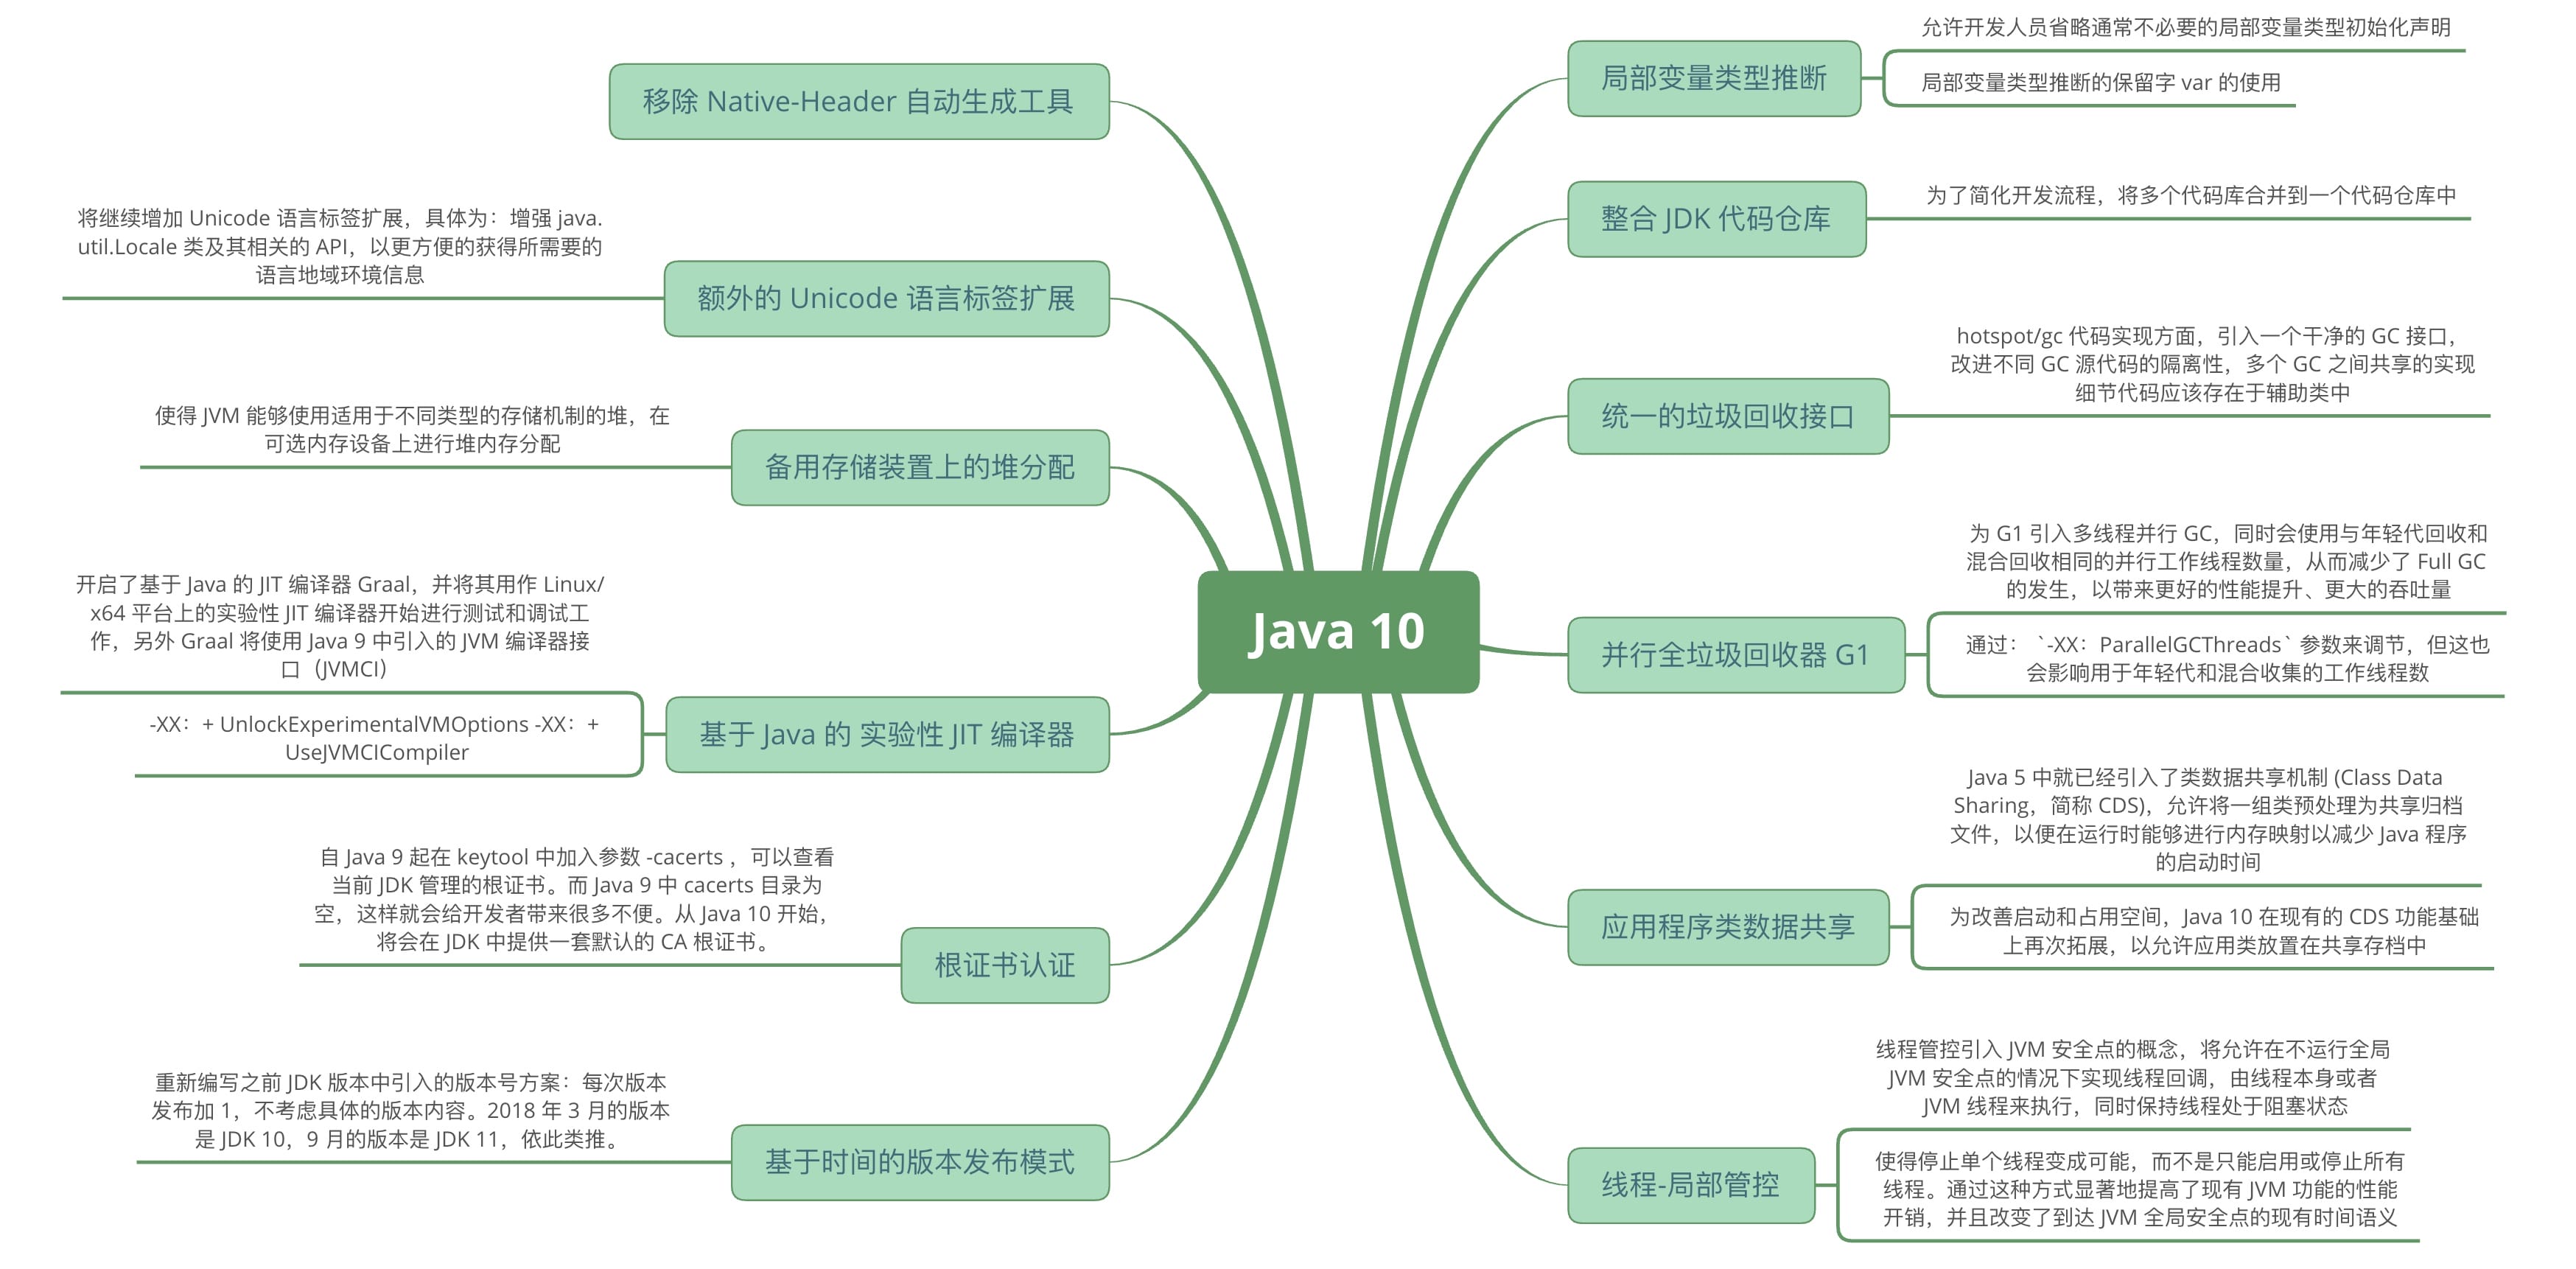 Java 10 新特性概述_Java8 以上特性概述